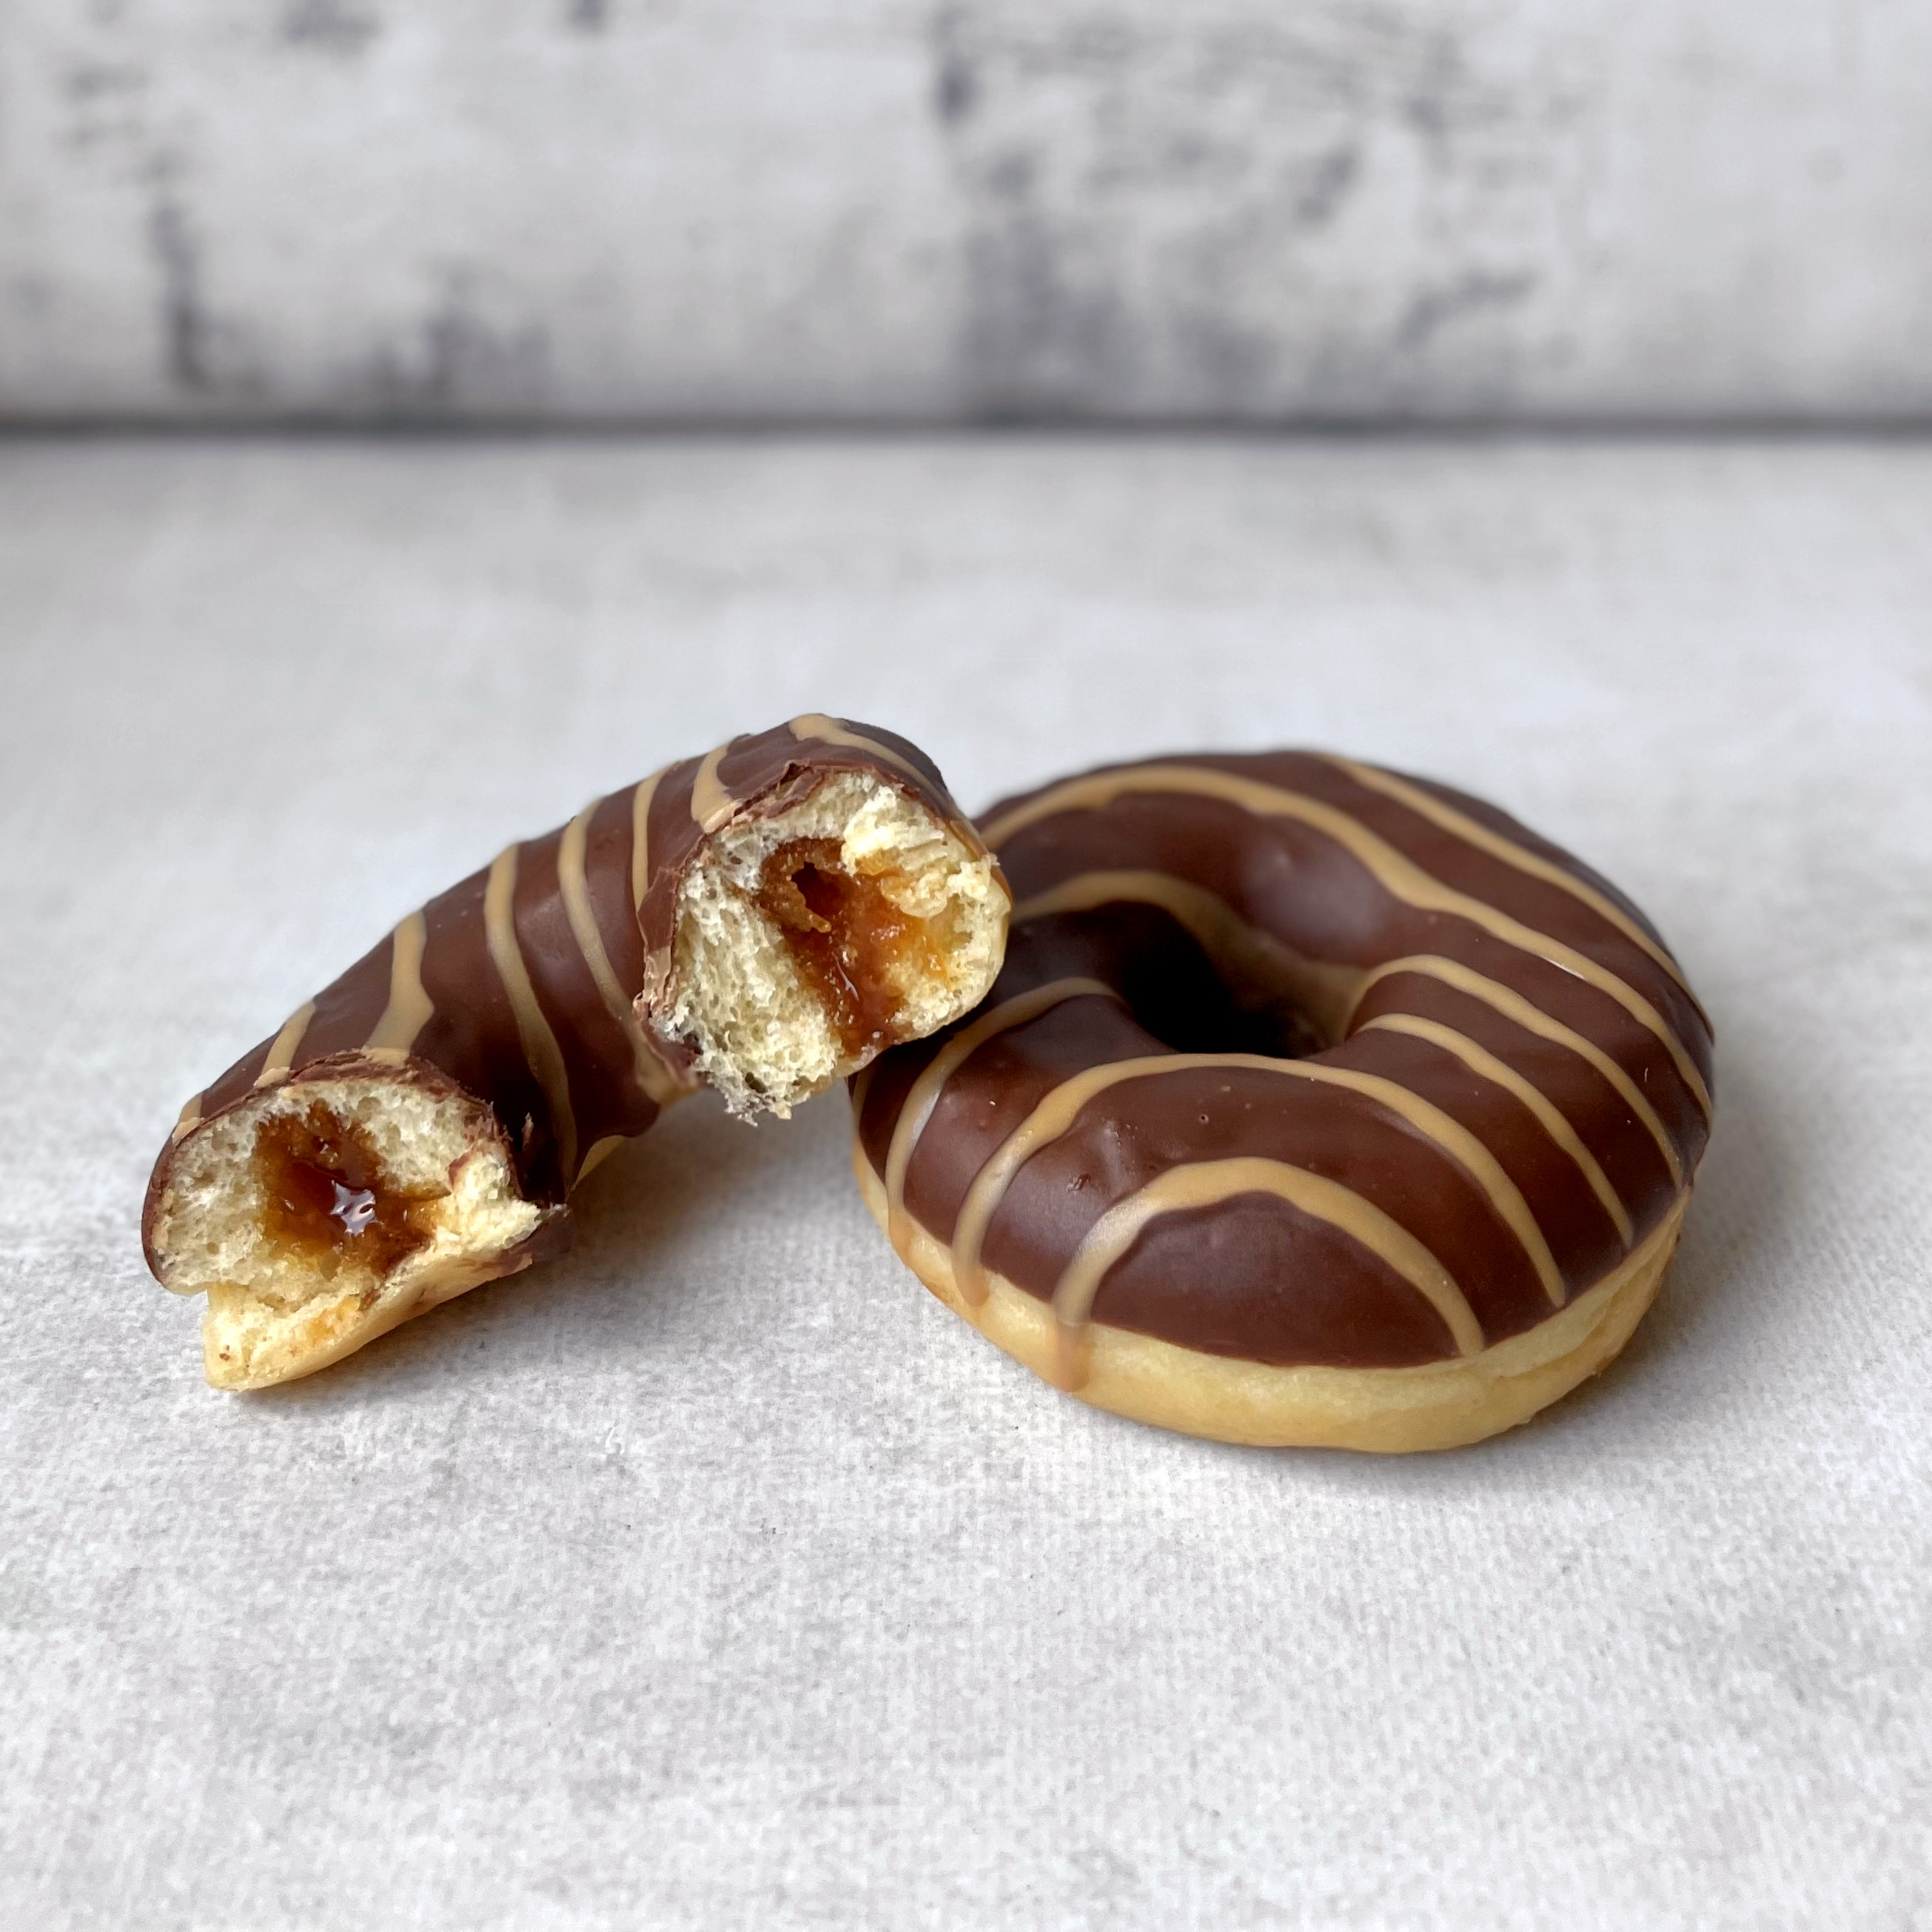 Пончик с карамельной начинкой и шоколадной кондитерской глазурью изображение 3